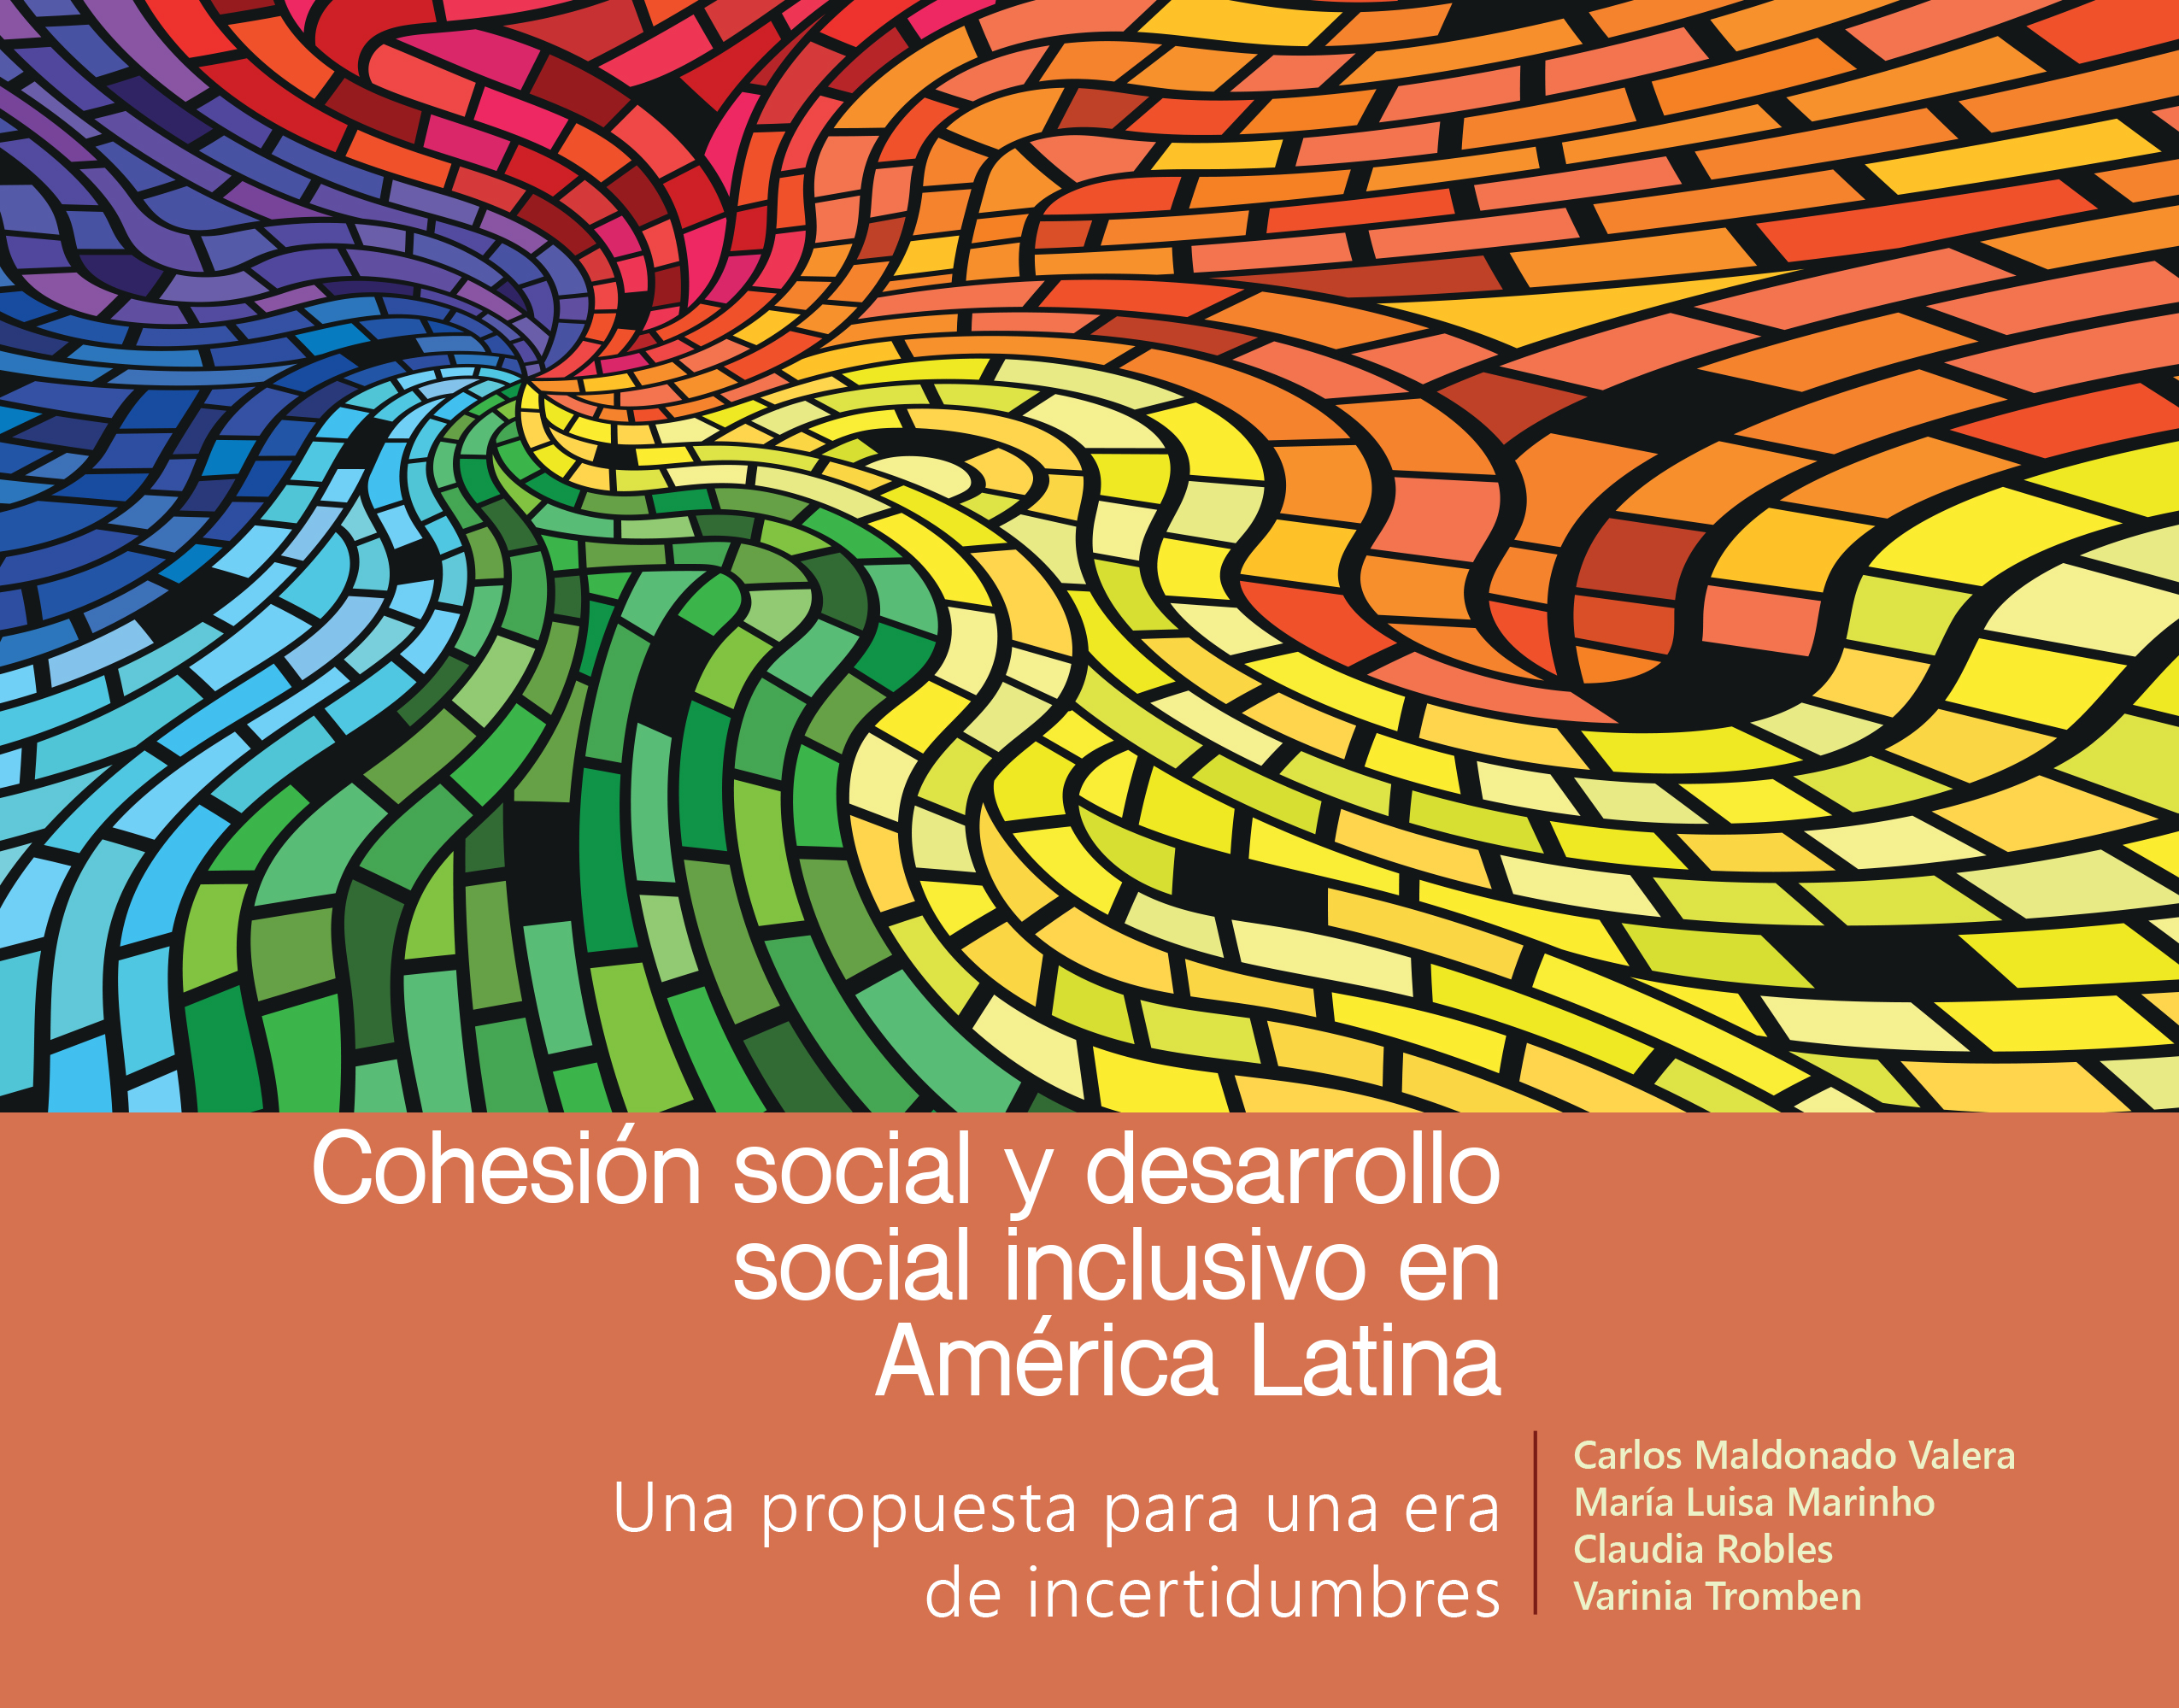 Seminario Internacional Virtual con motivo del lanzamiento del documento “Cohesión social y desarrollo social inclusivo en América Latina: una propuesta para una era de incertidumbres”